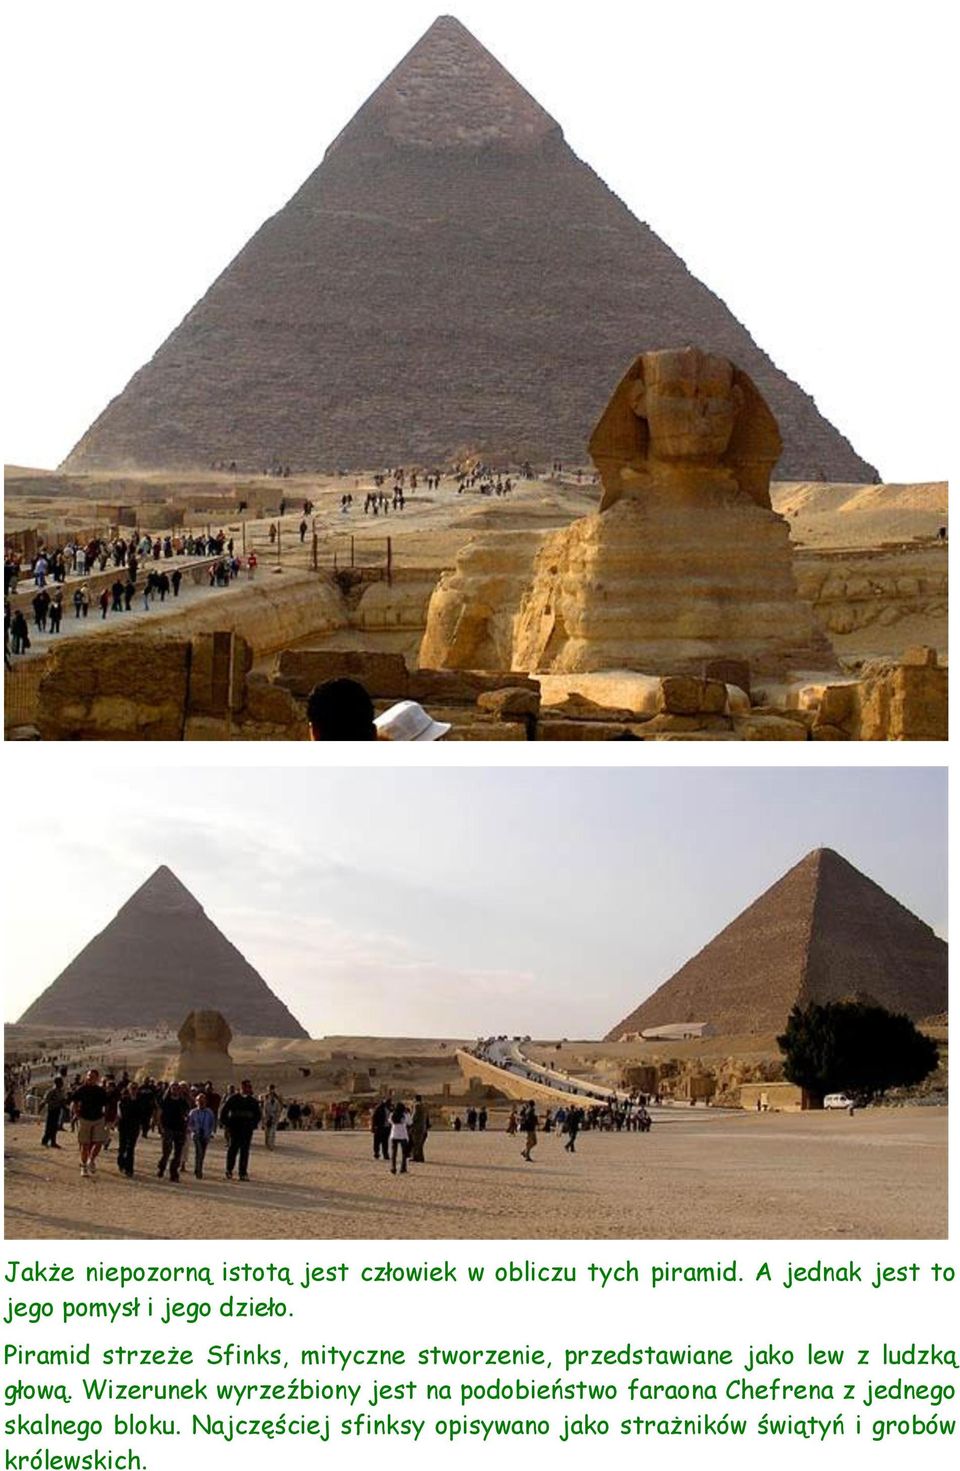 Piramid strzeże Sfinks, mityczne stworzenie, przedstawiane jako lew z ludzką głową.